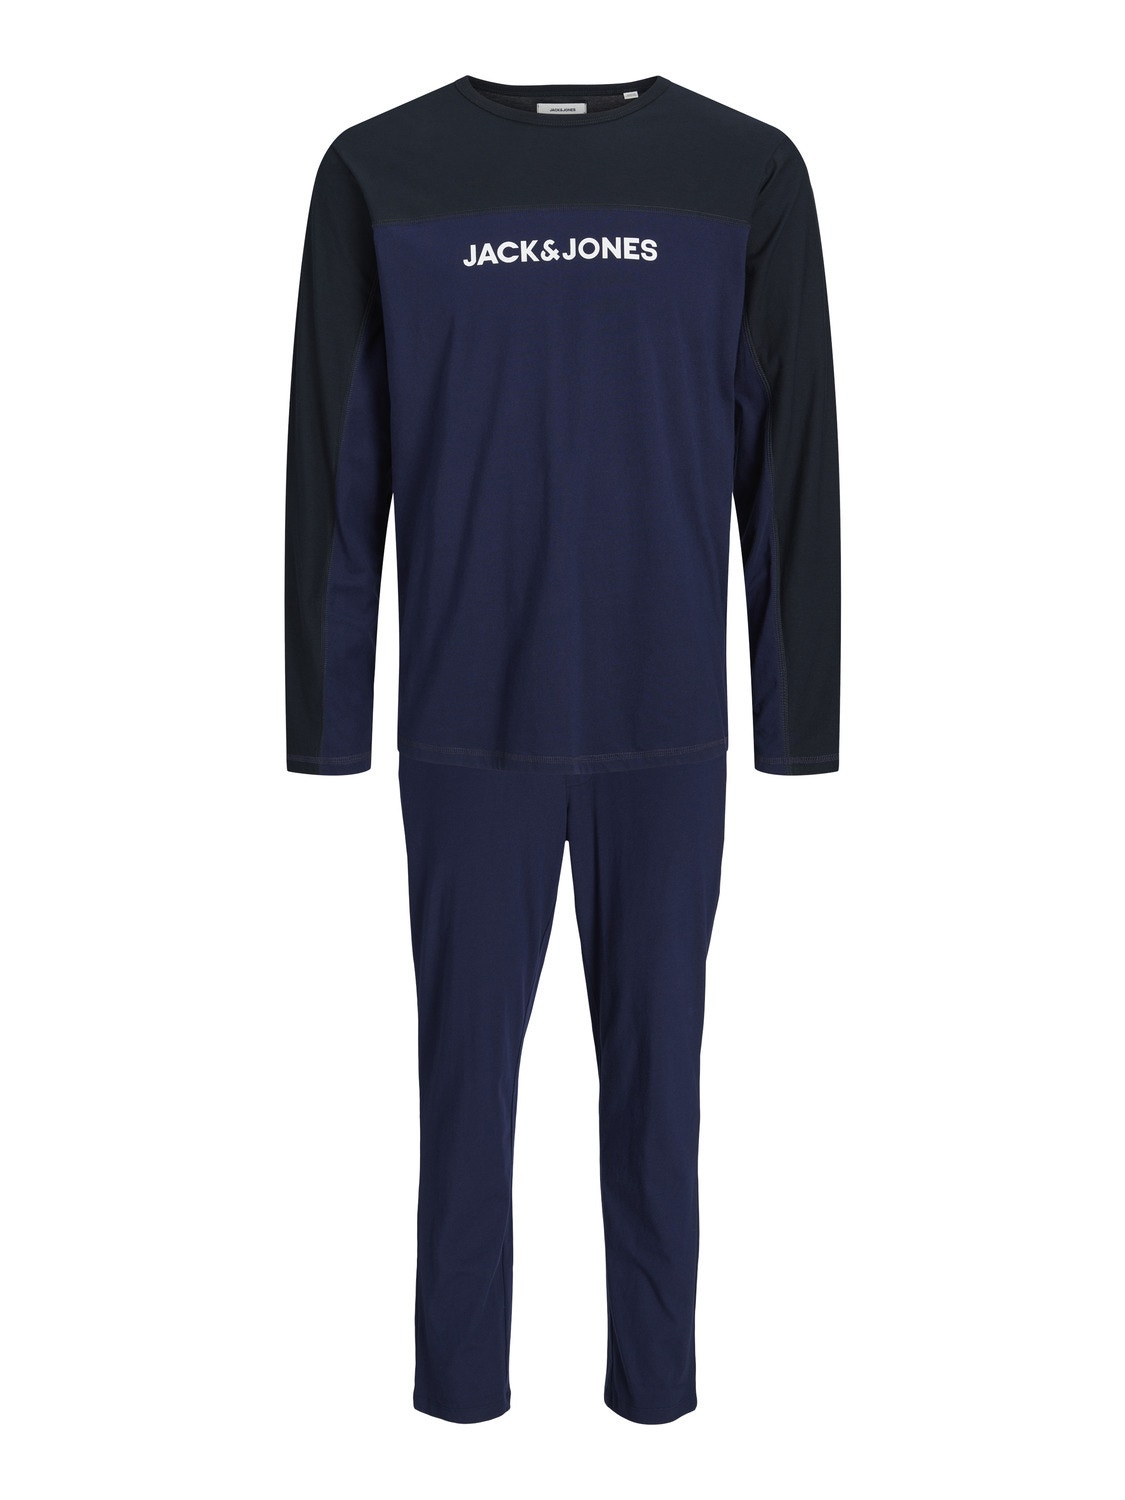 Jack & Jones Loungewear -Navy Blazer - 12202590